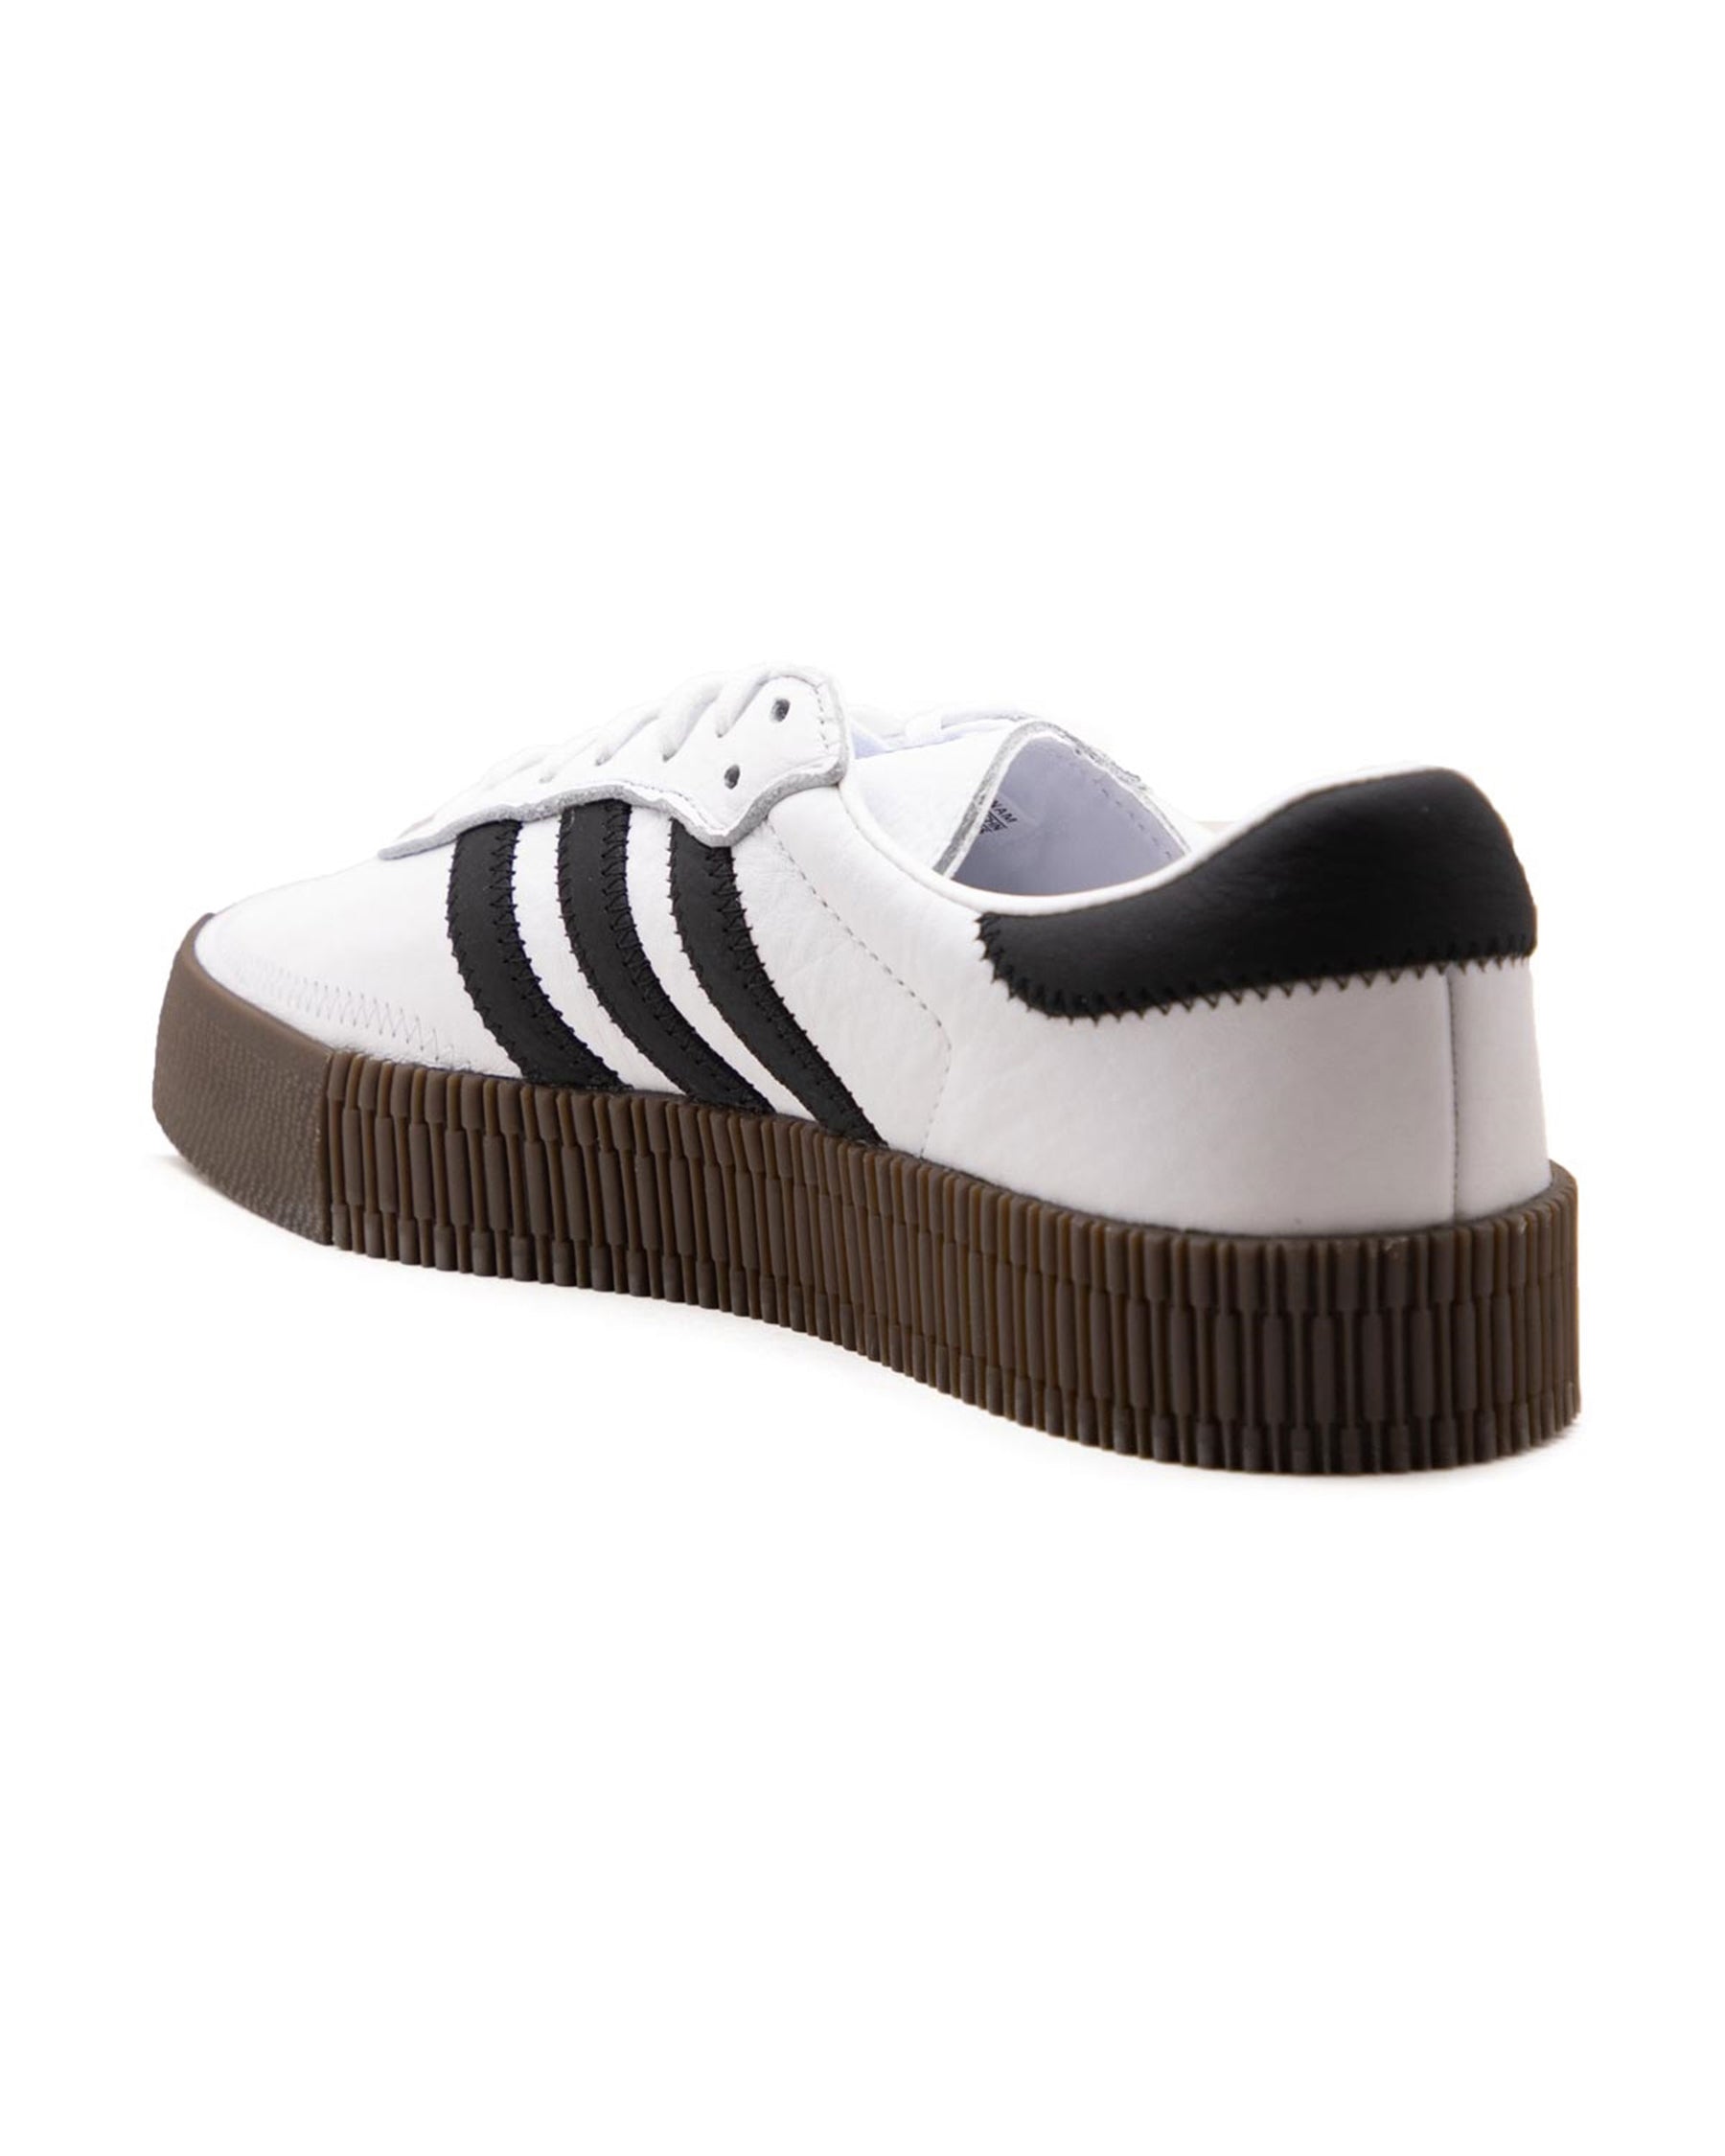 Adidas originals Sambarose Sneakers/Shoes GZ2797